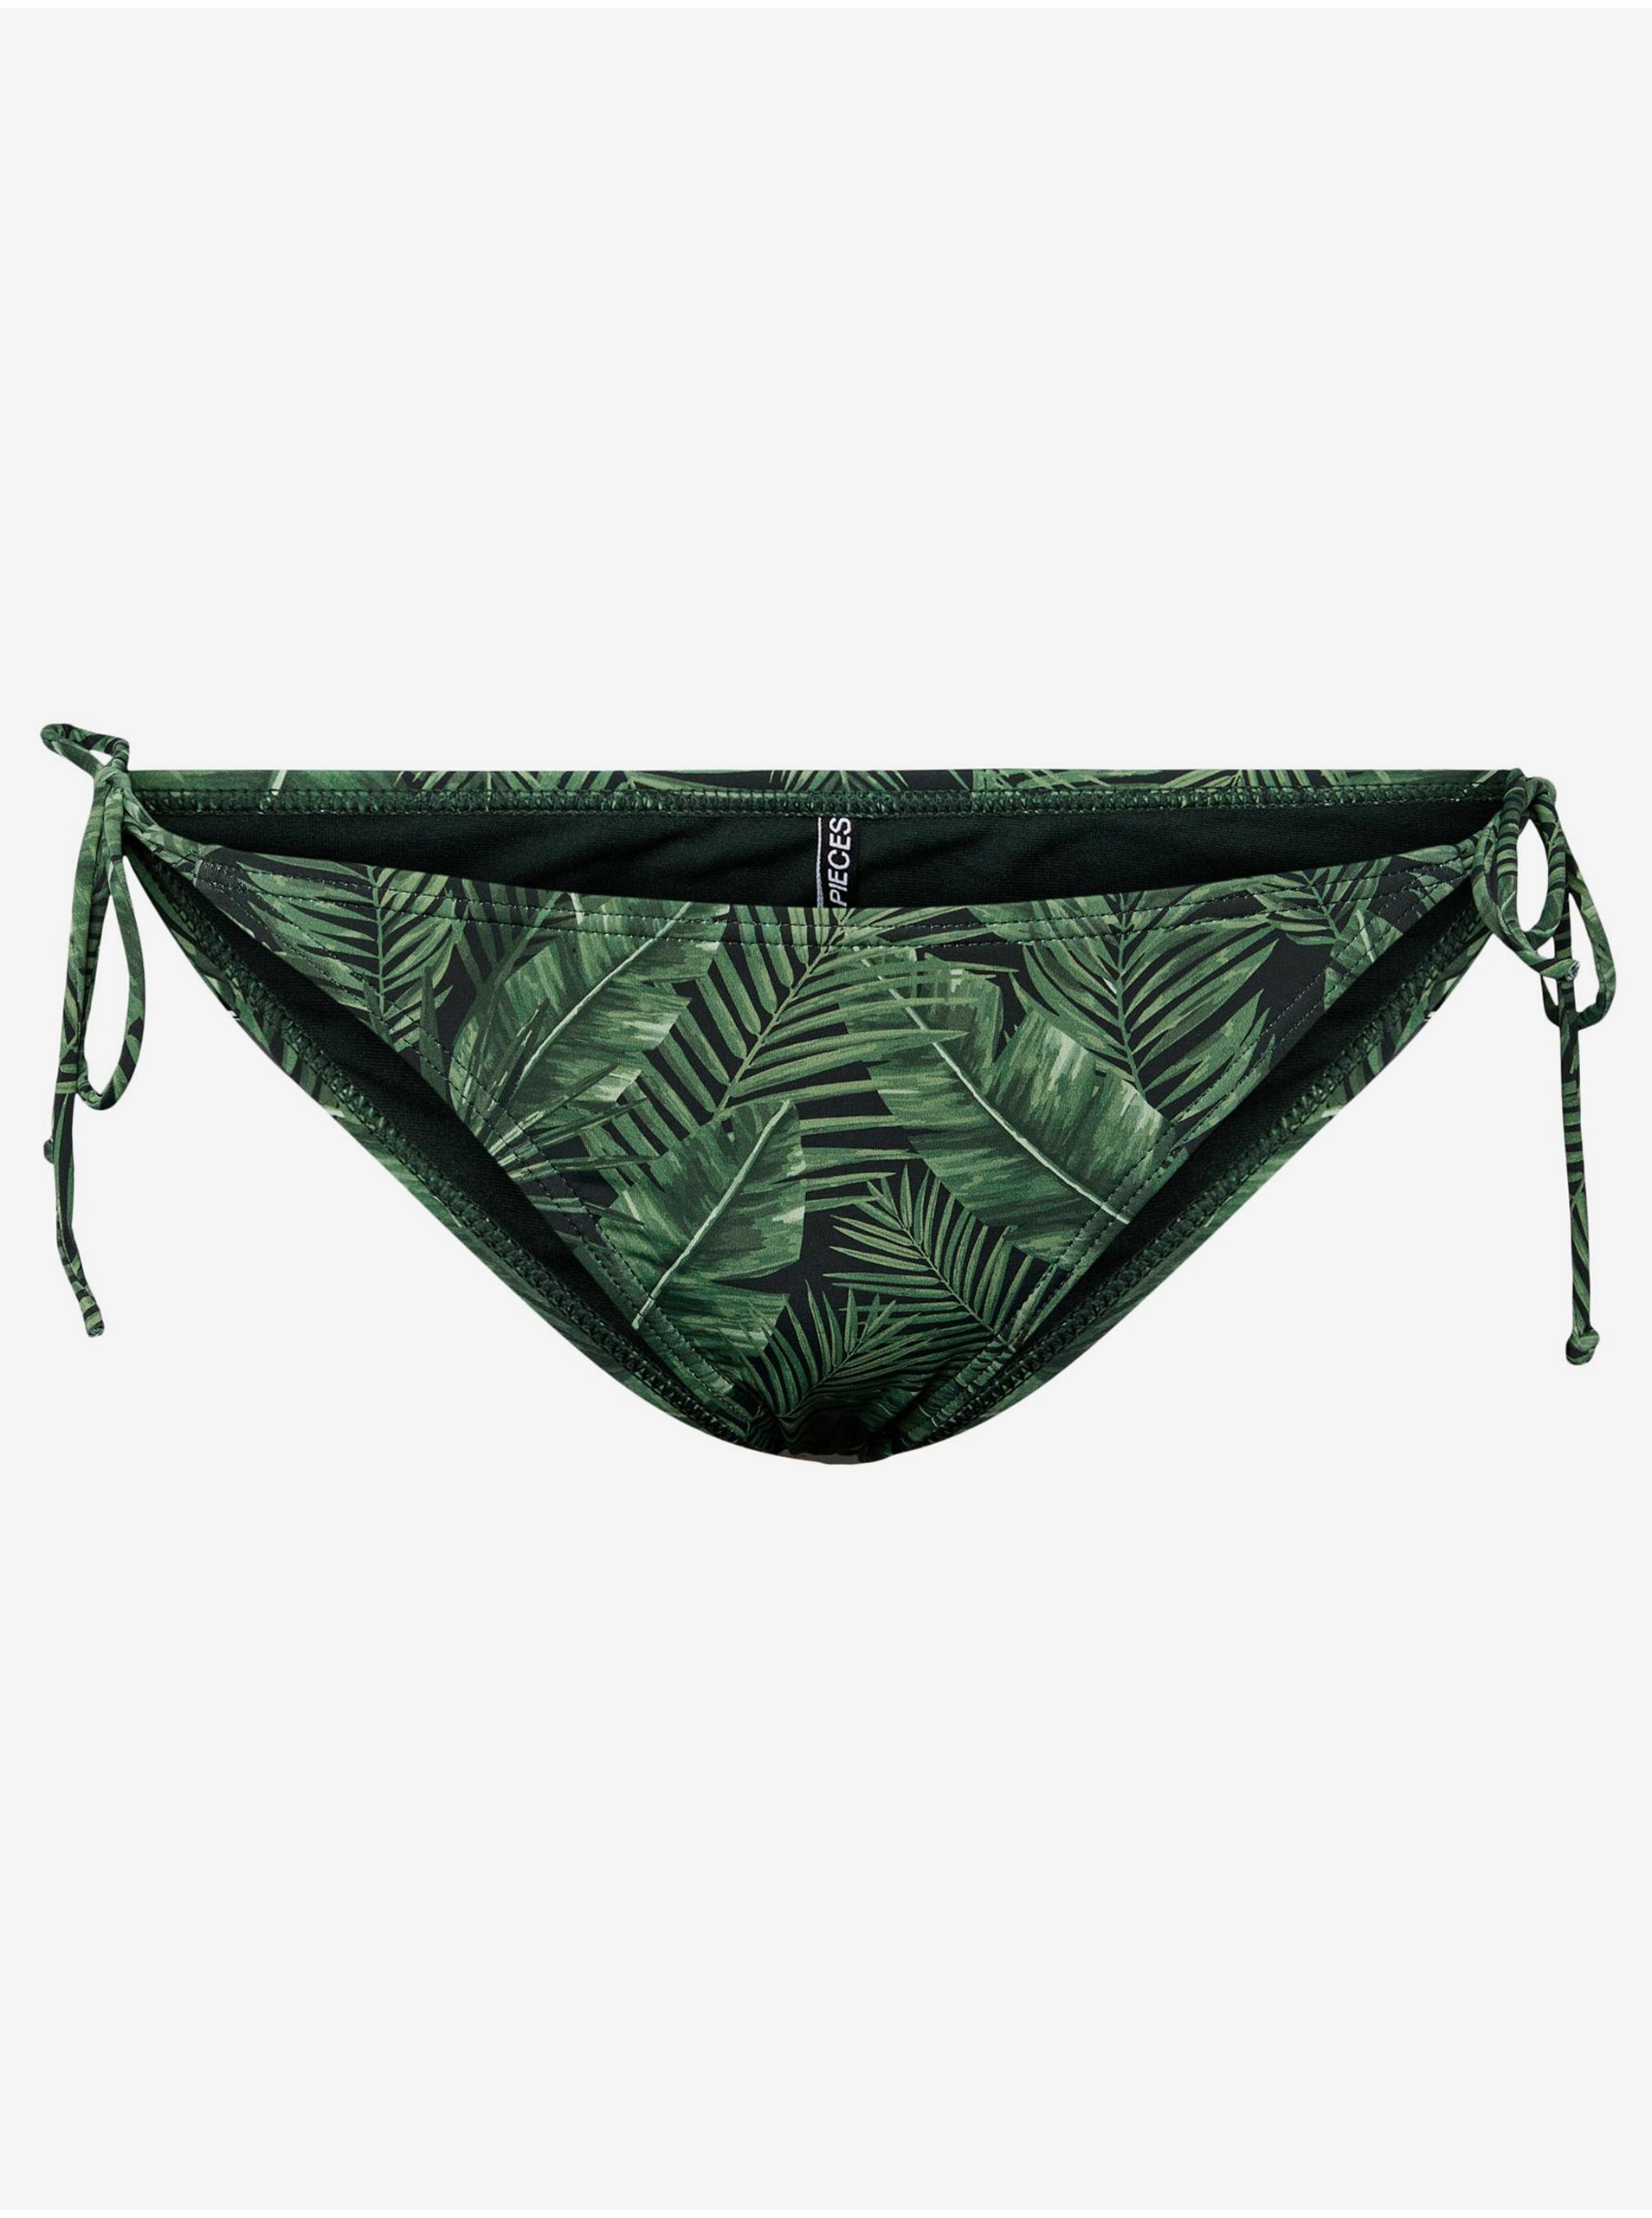 Green Women's Patterned Swimsuit Bottoms Pieces Bilma - Women's